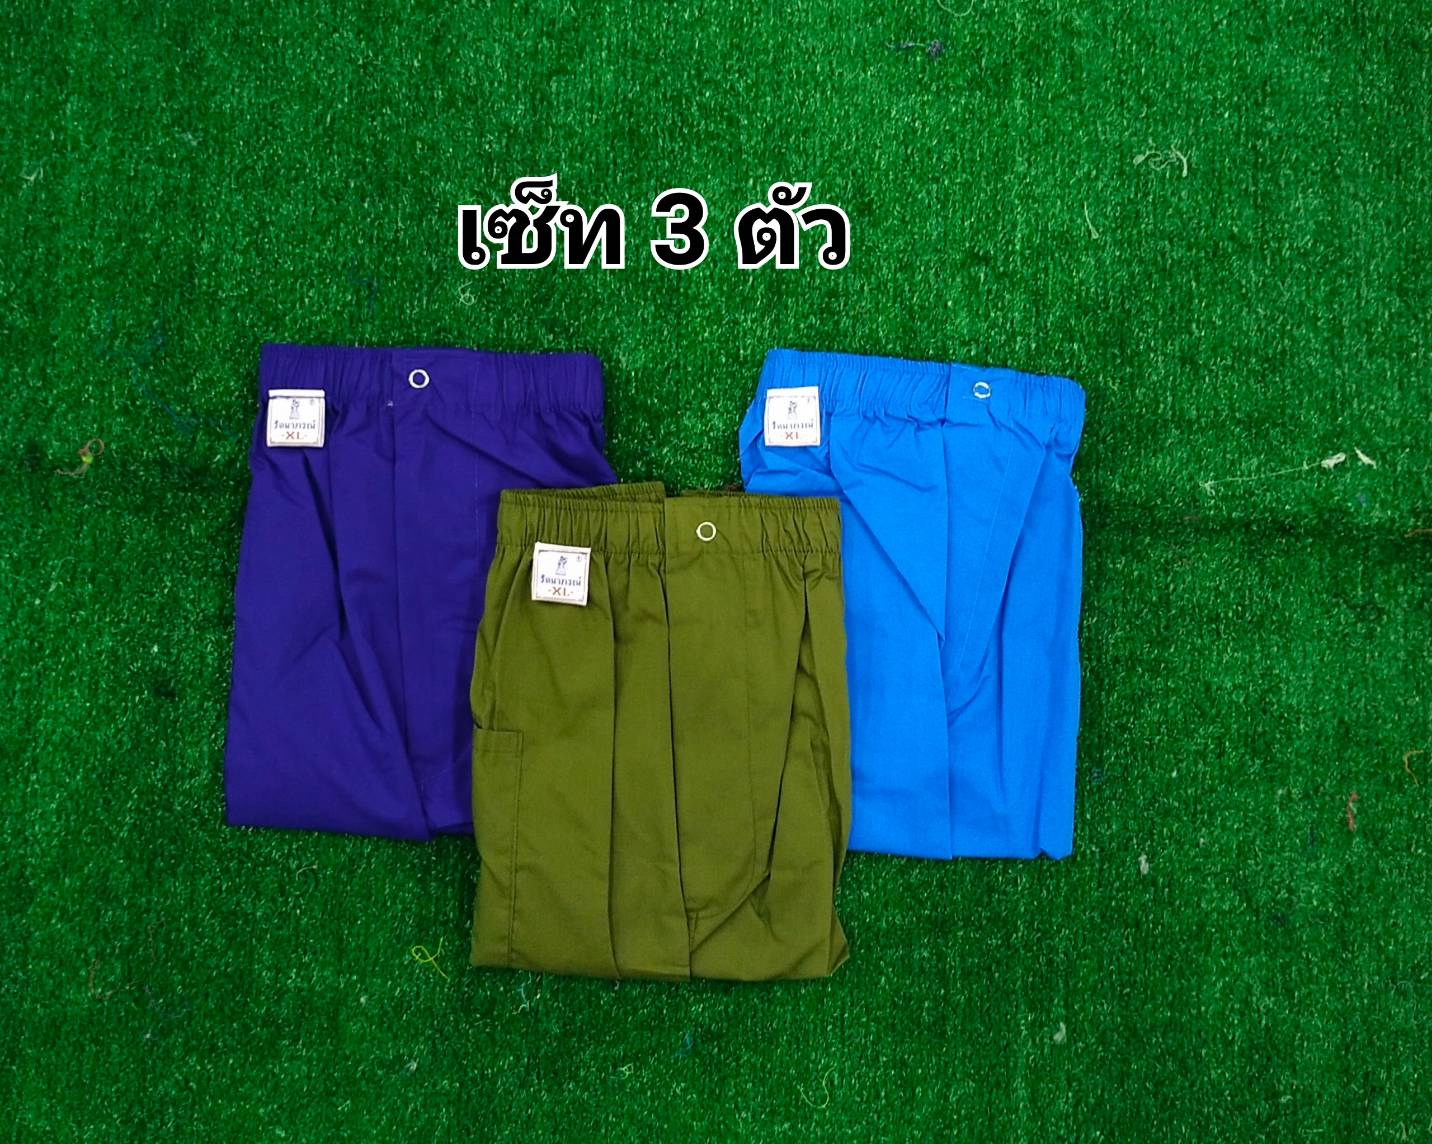 คละสี 6ตัว /คละสี3ตัว กางเกงจับหมู รัตนาภรณ์ ไซส์ XL